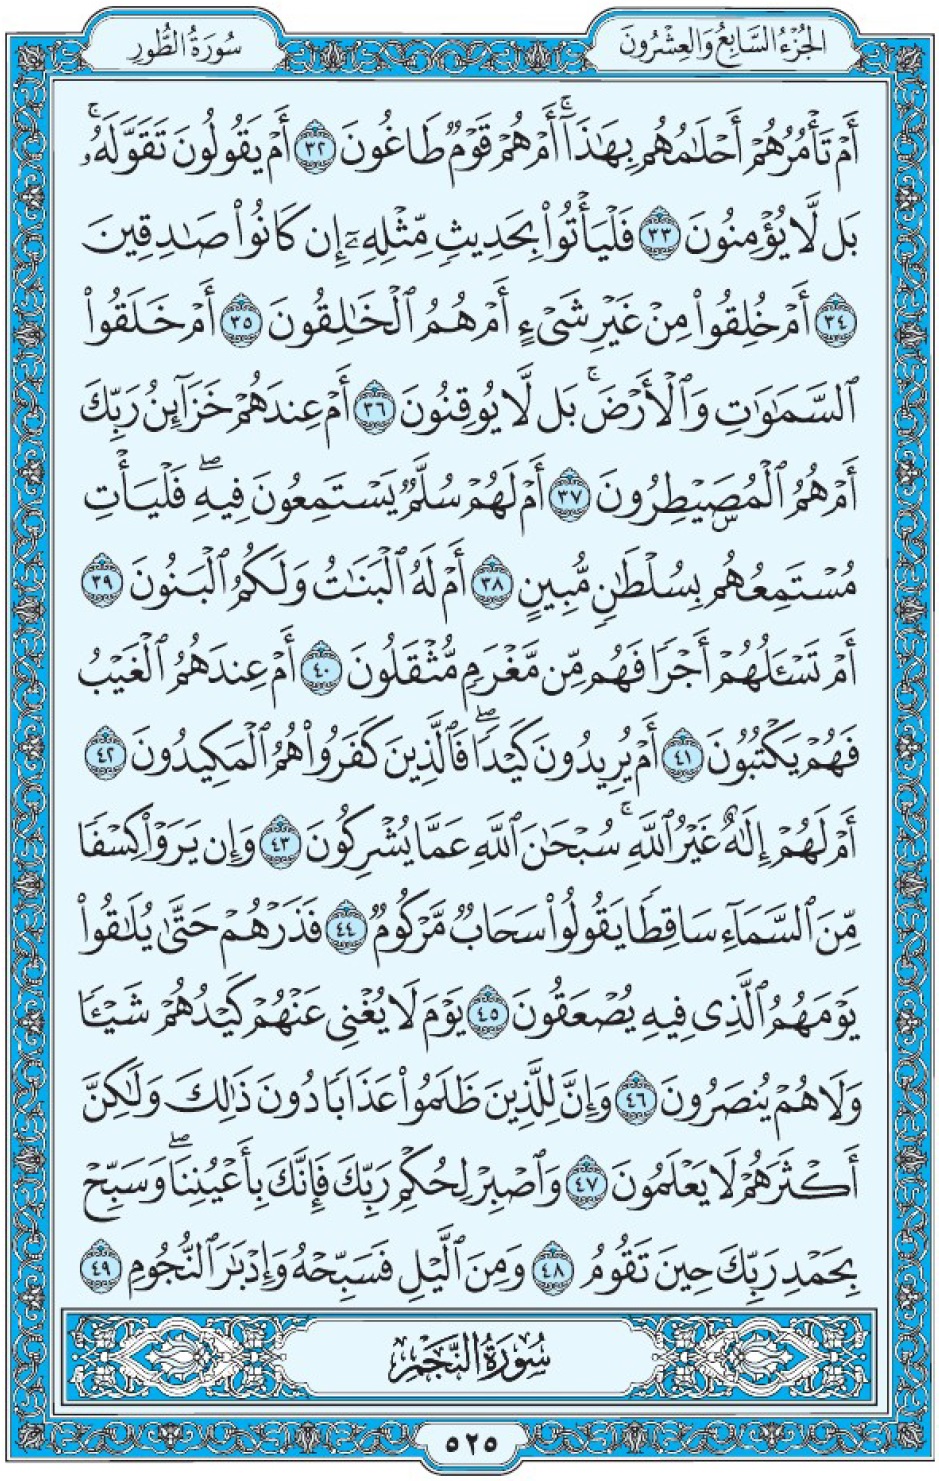 Коран Мединский мусхаф страница 525, ат-Тур, аят 32-49